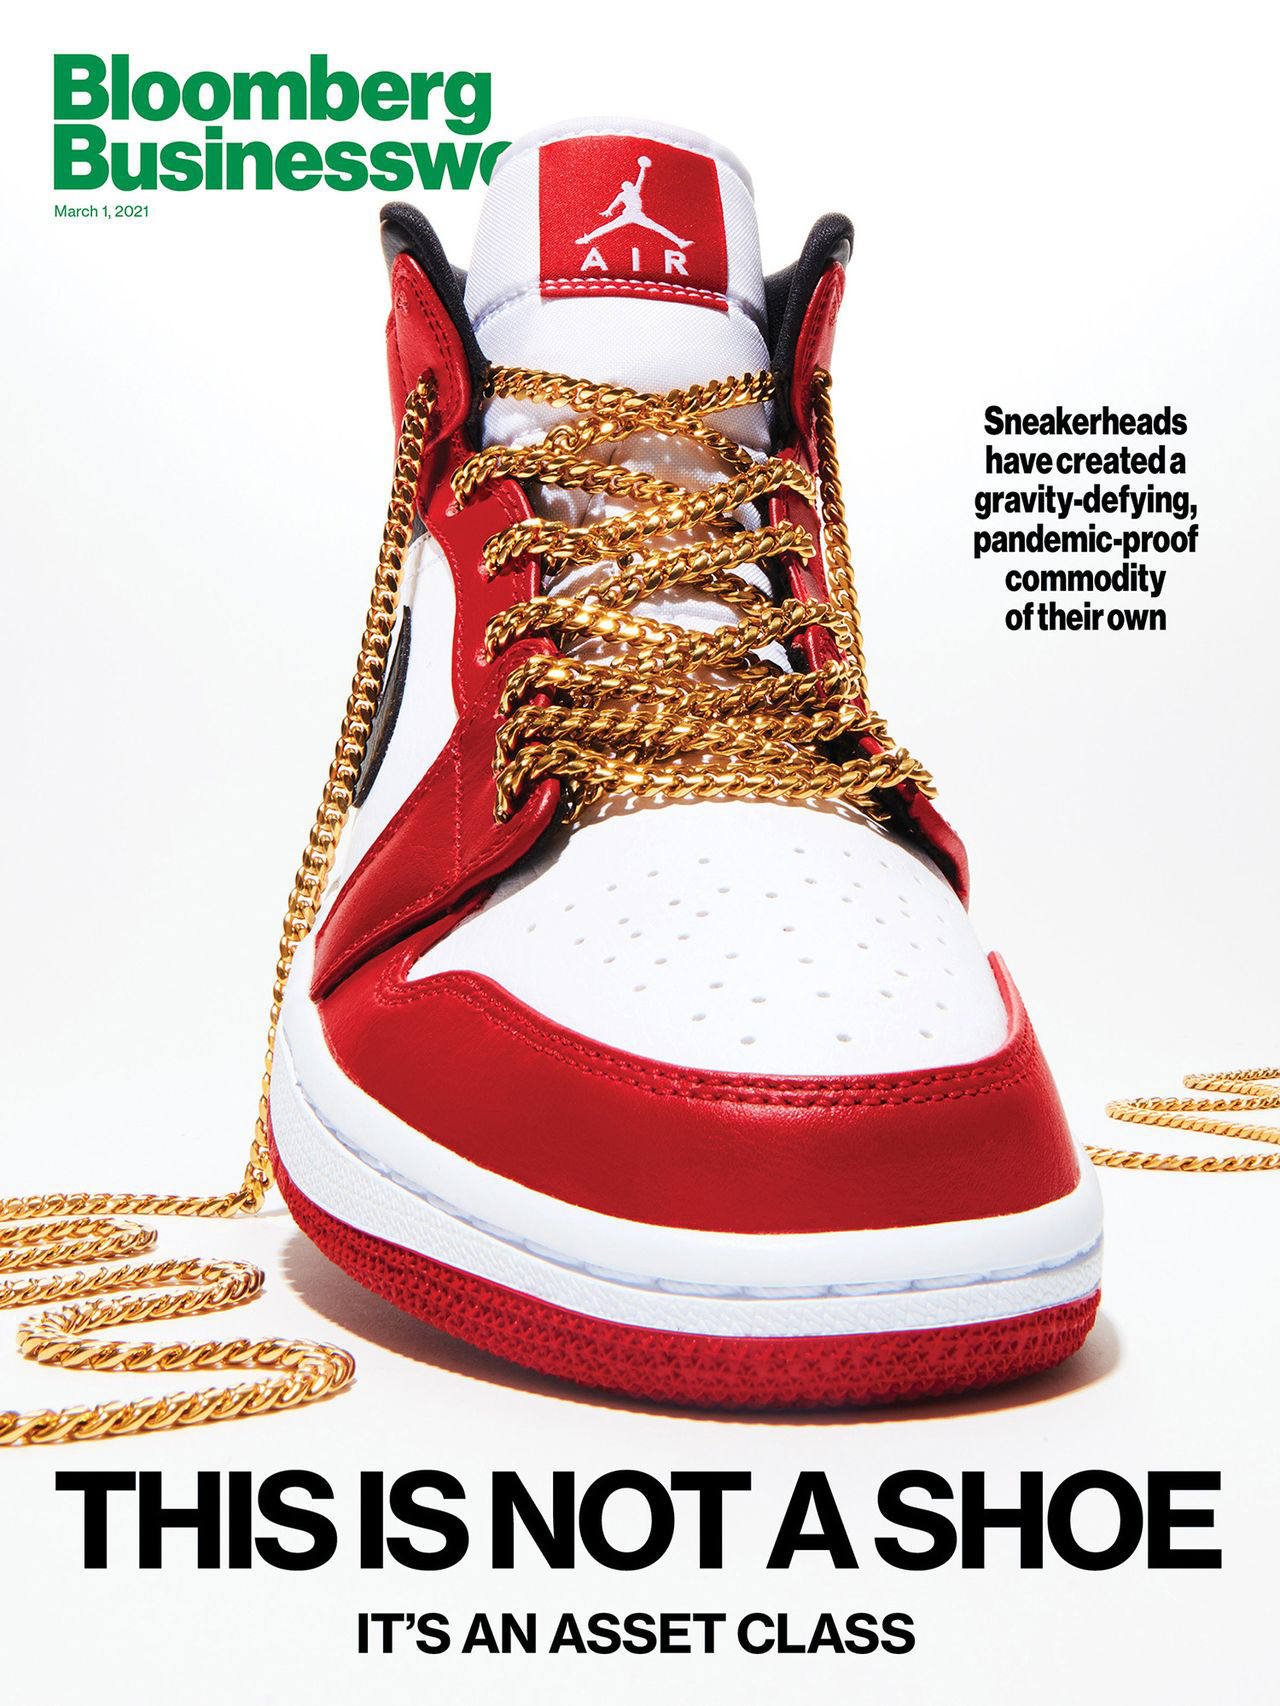 pettway-businessweek-jordans-sneaker-2021-02